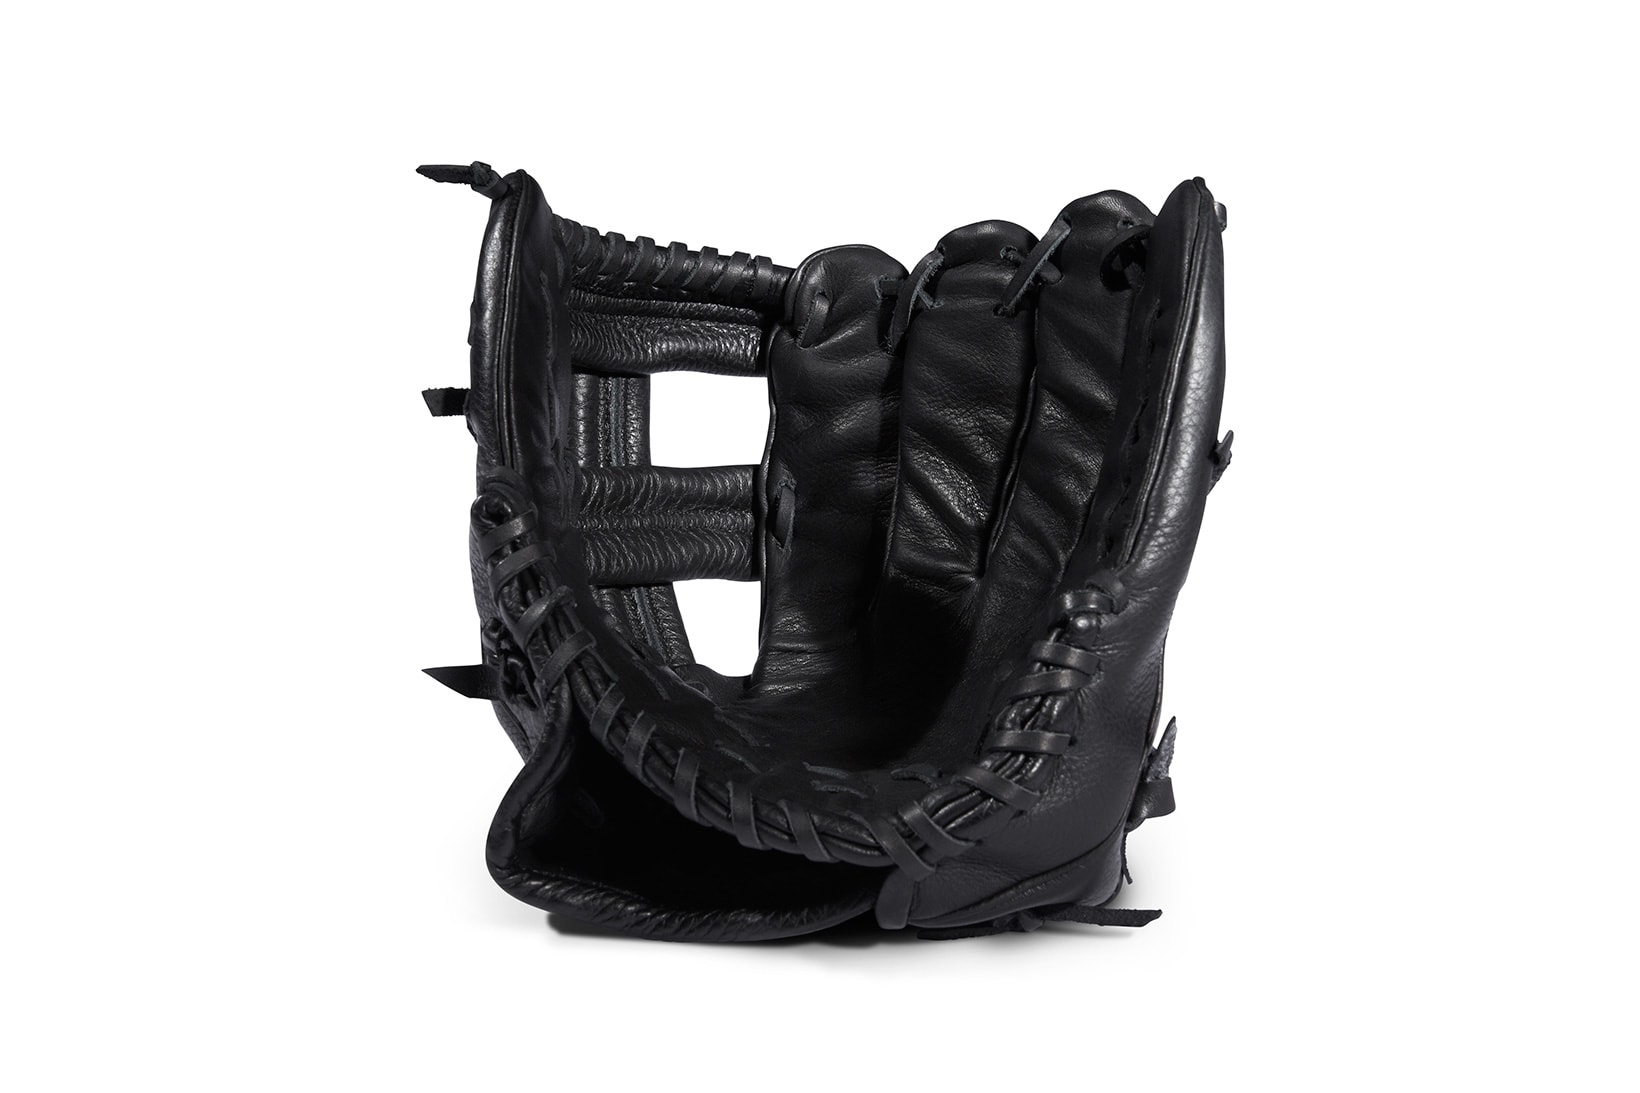 KILLSPENCER Baseball Infielder Leather Glove mitt